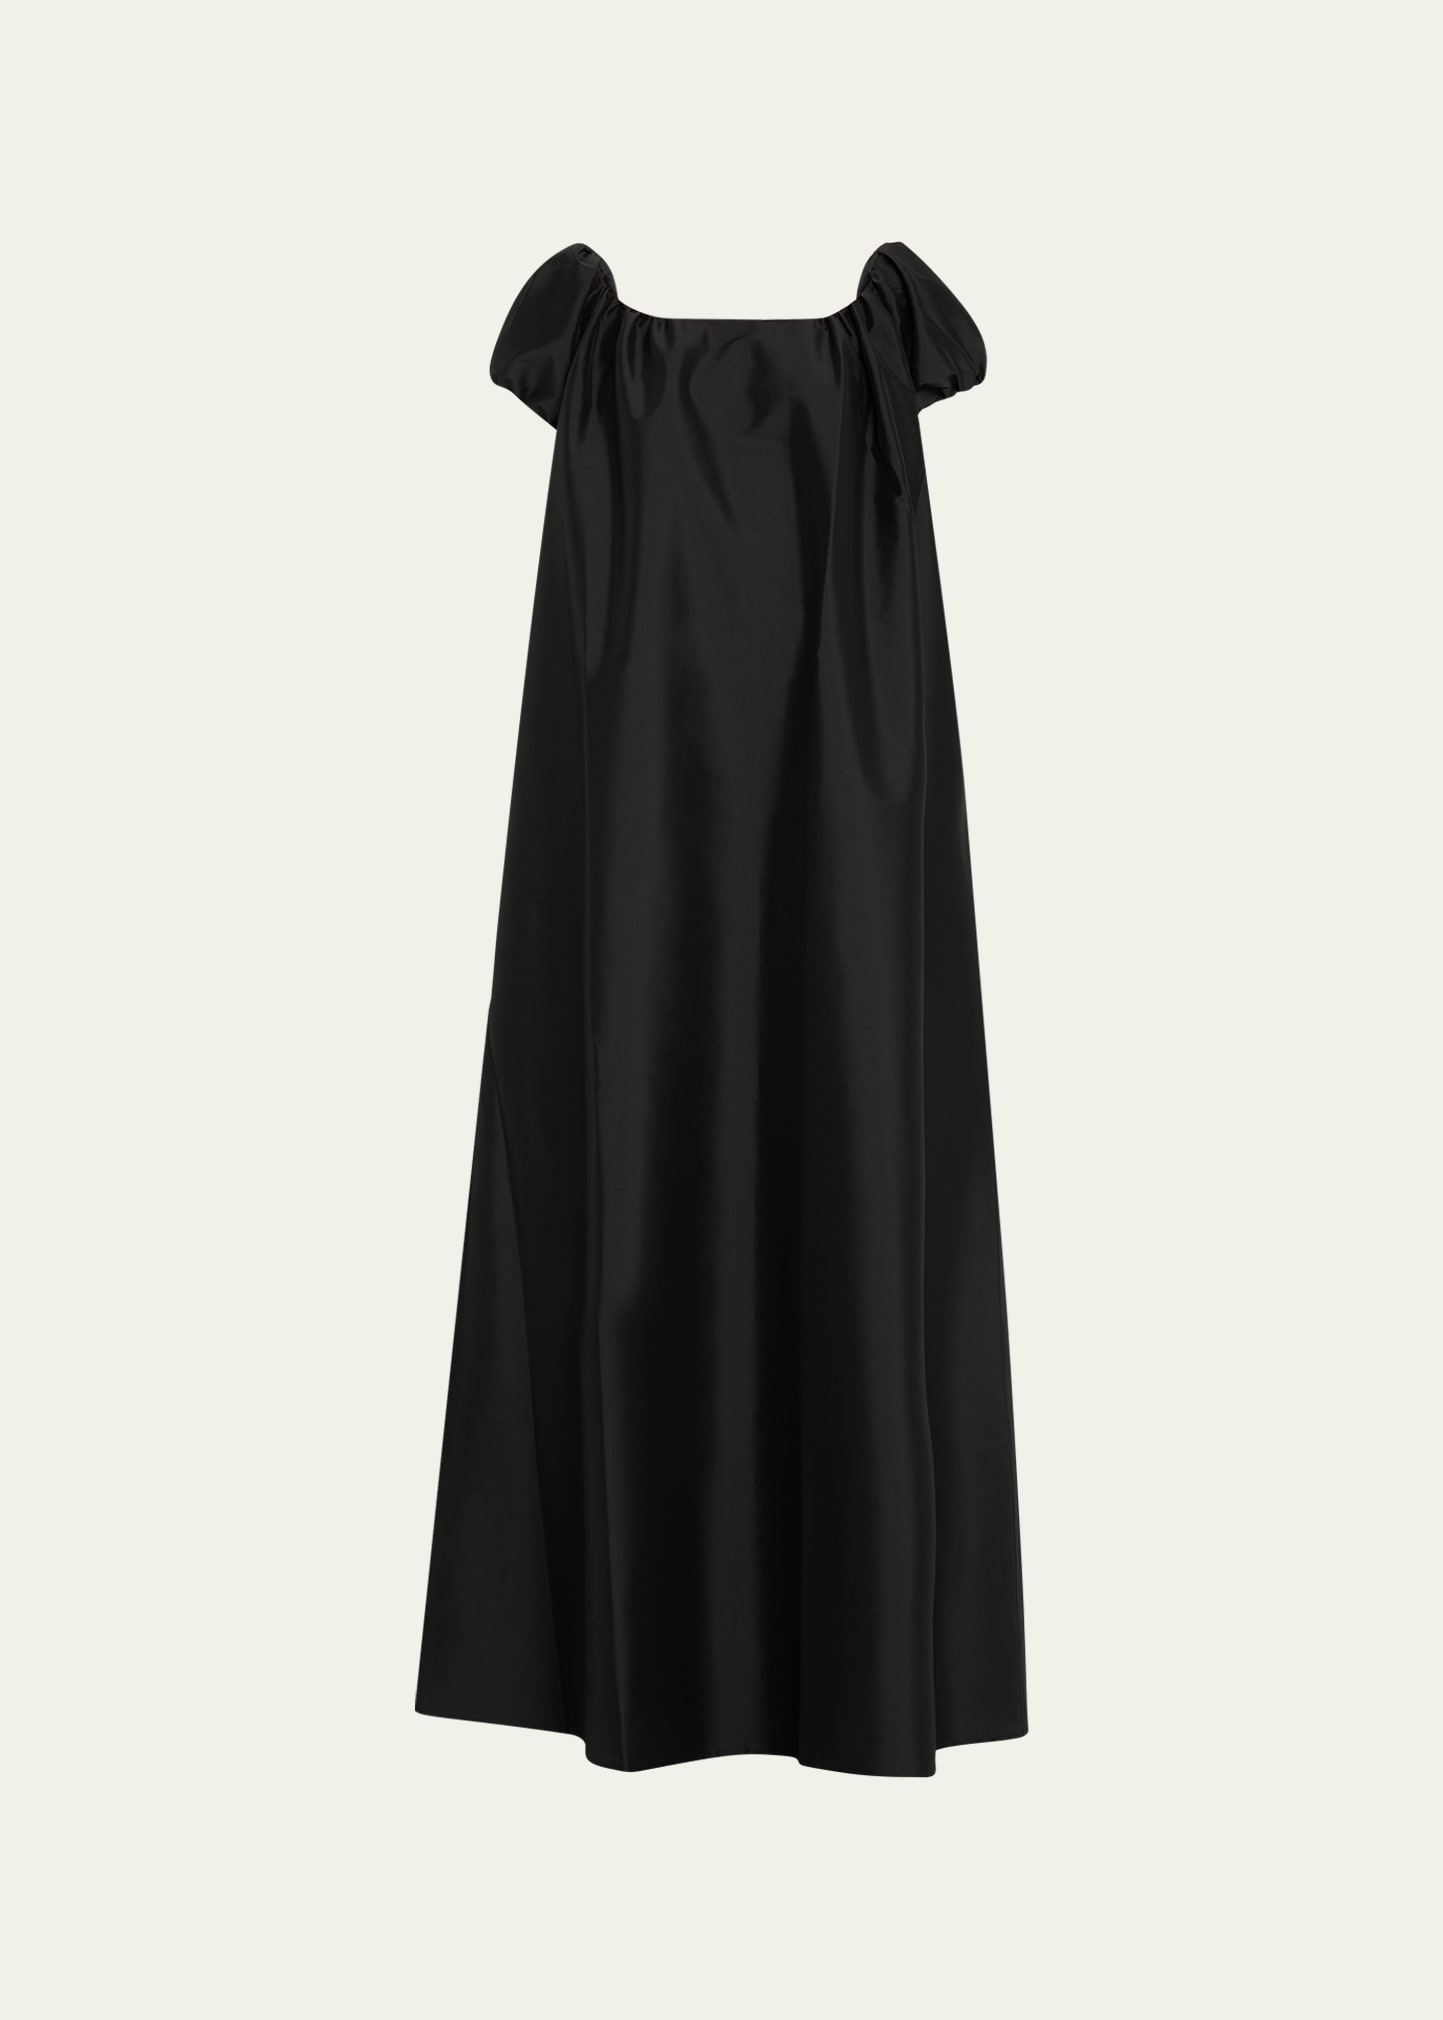 Bernadette Rianne Long Open-neck Dress In Black